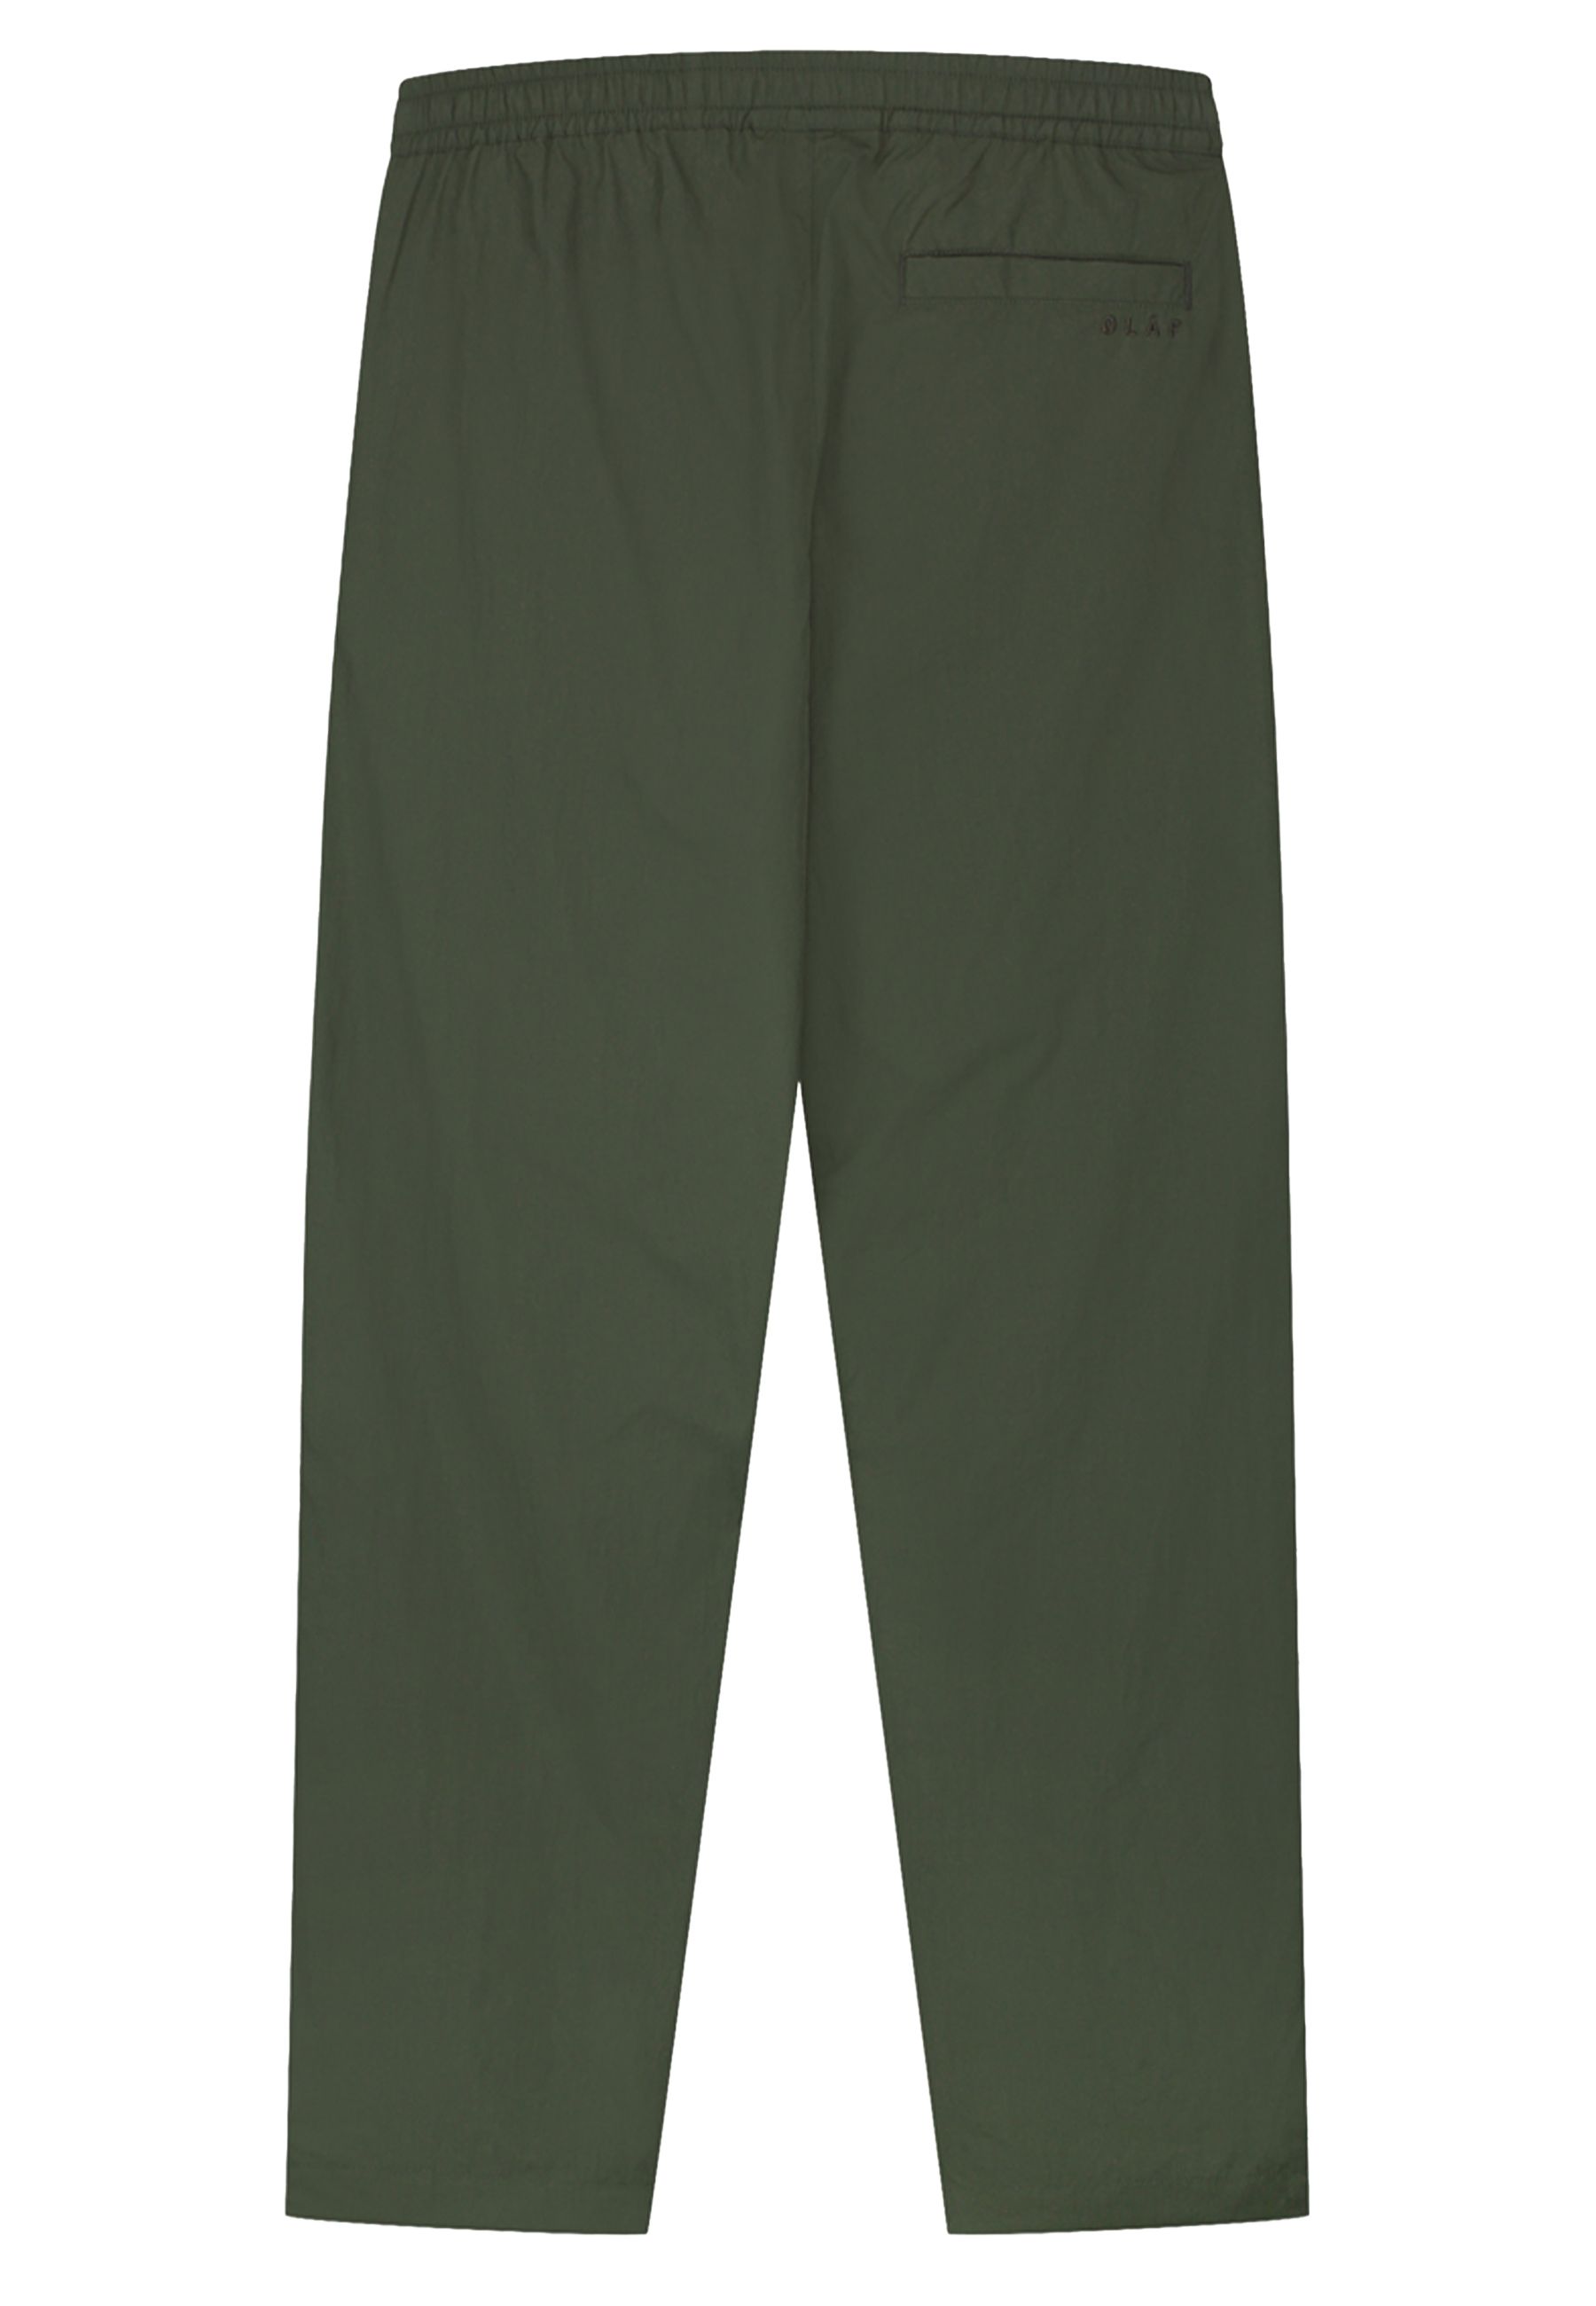 Crinkle Nylon Track Pantalons Groen M160407